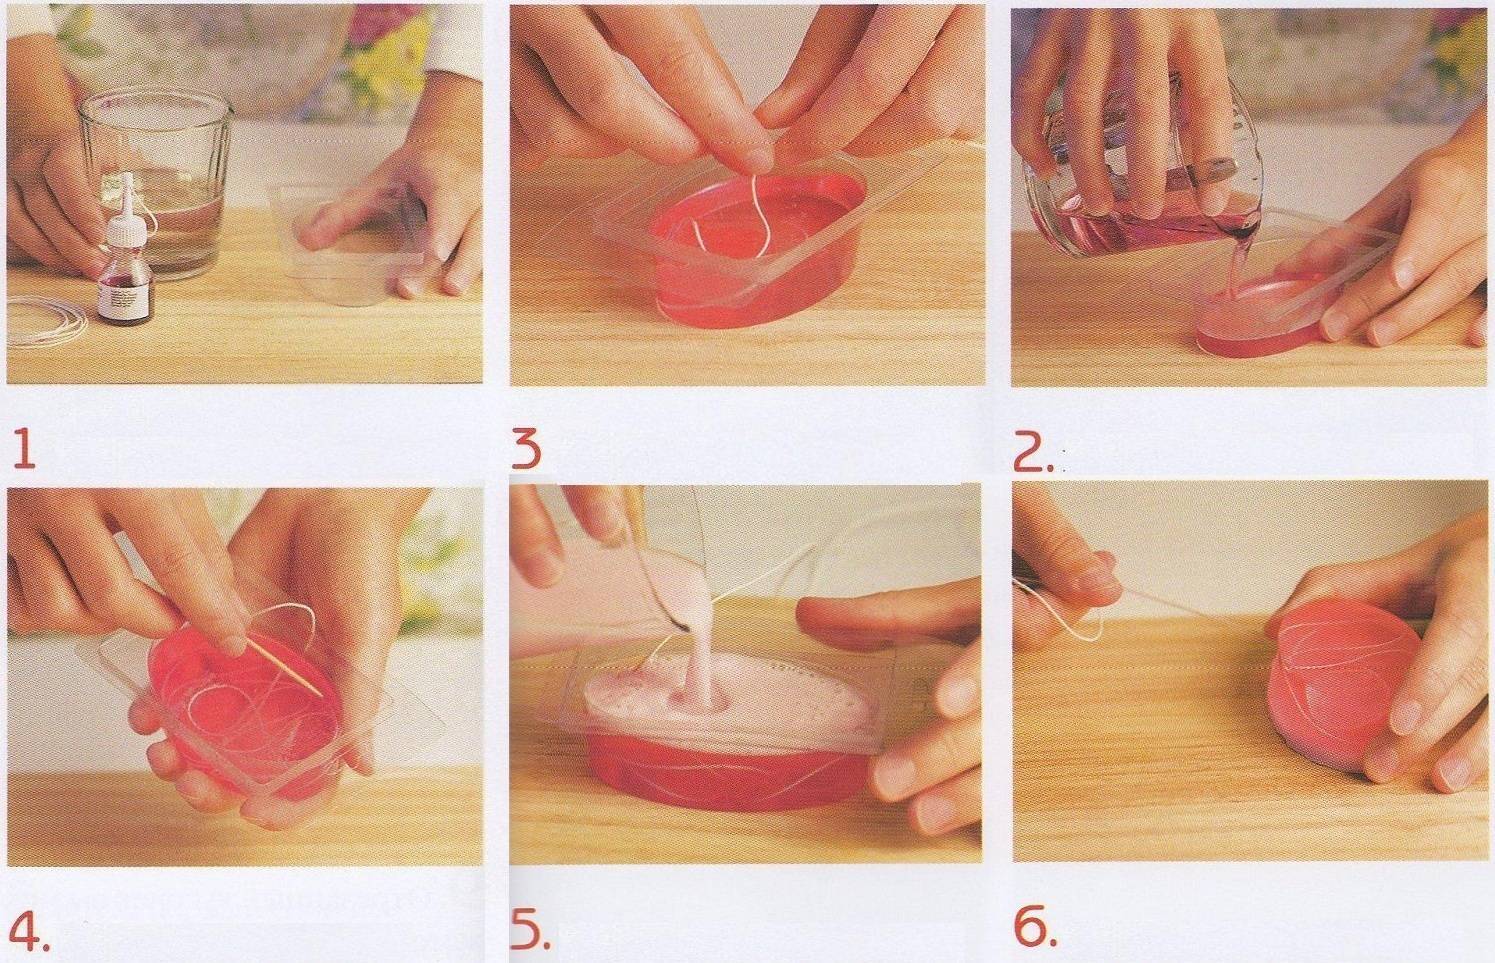 Мыловарение для начинающих как сделать мыло в домашних условиях — пошаговая инструкция